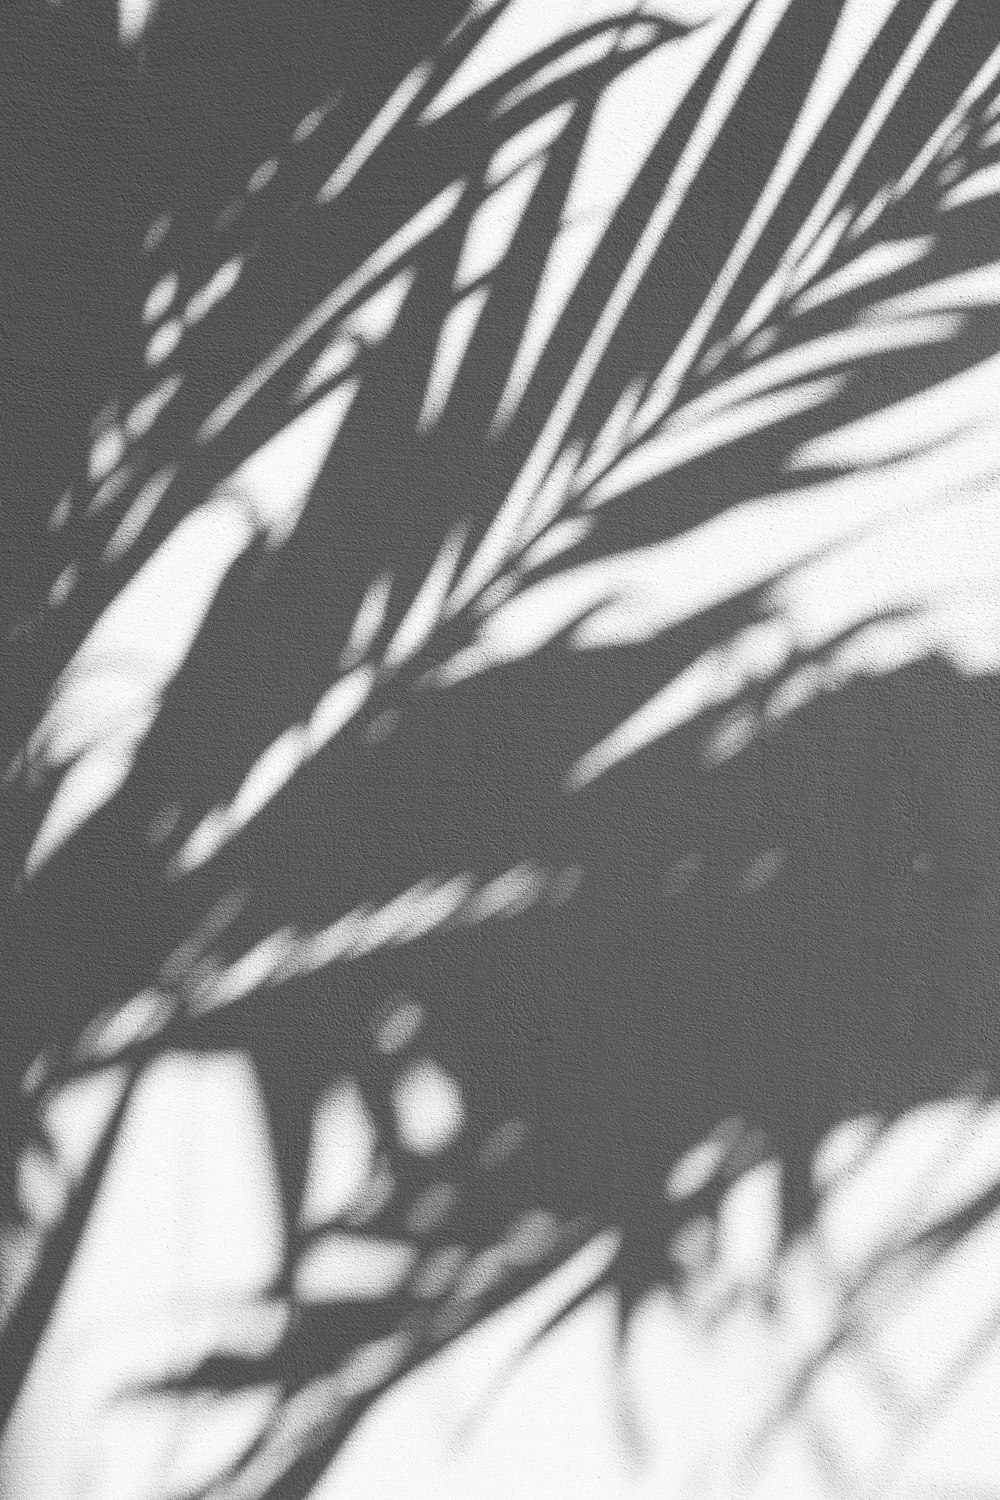 silhouette de palmier